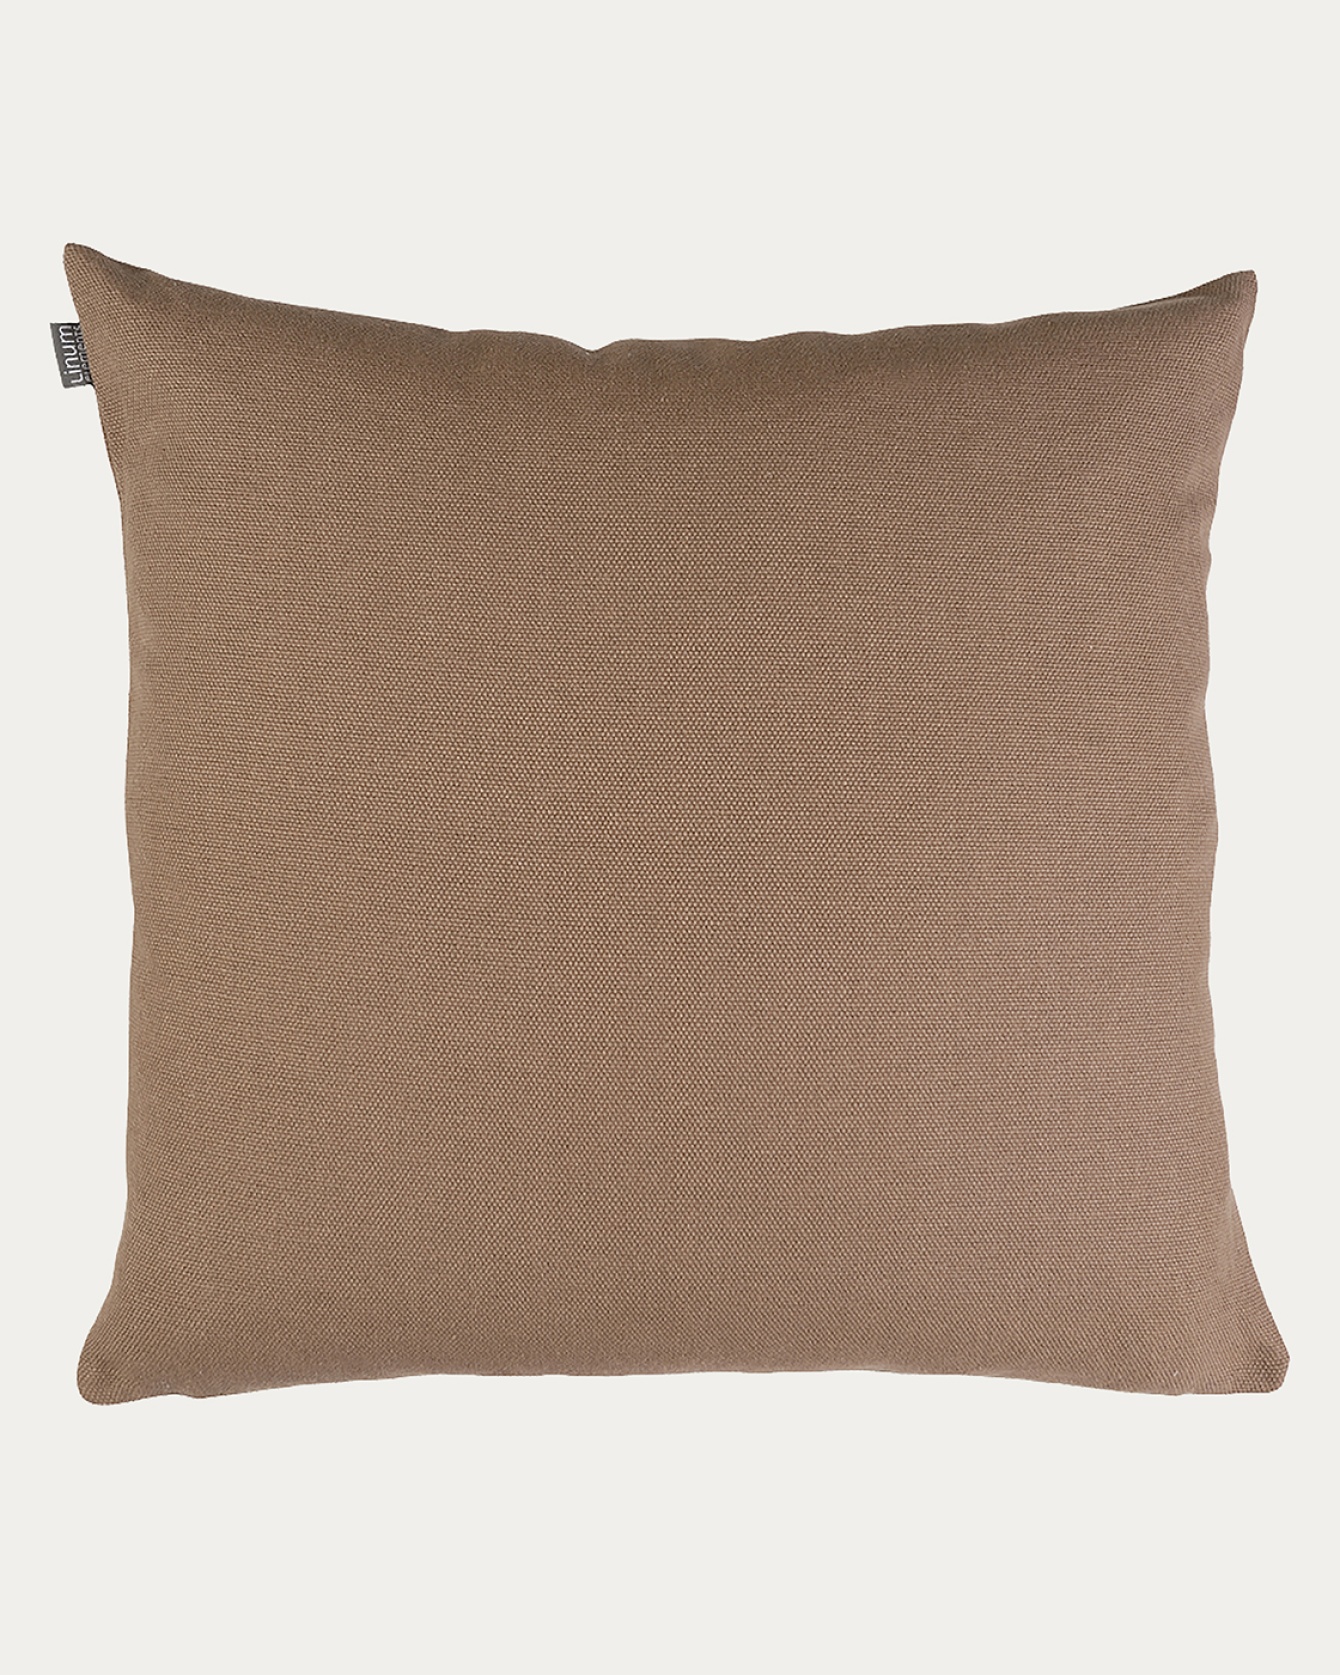 PEPPER Cushion cover 60x60 cm Dark mole brown